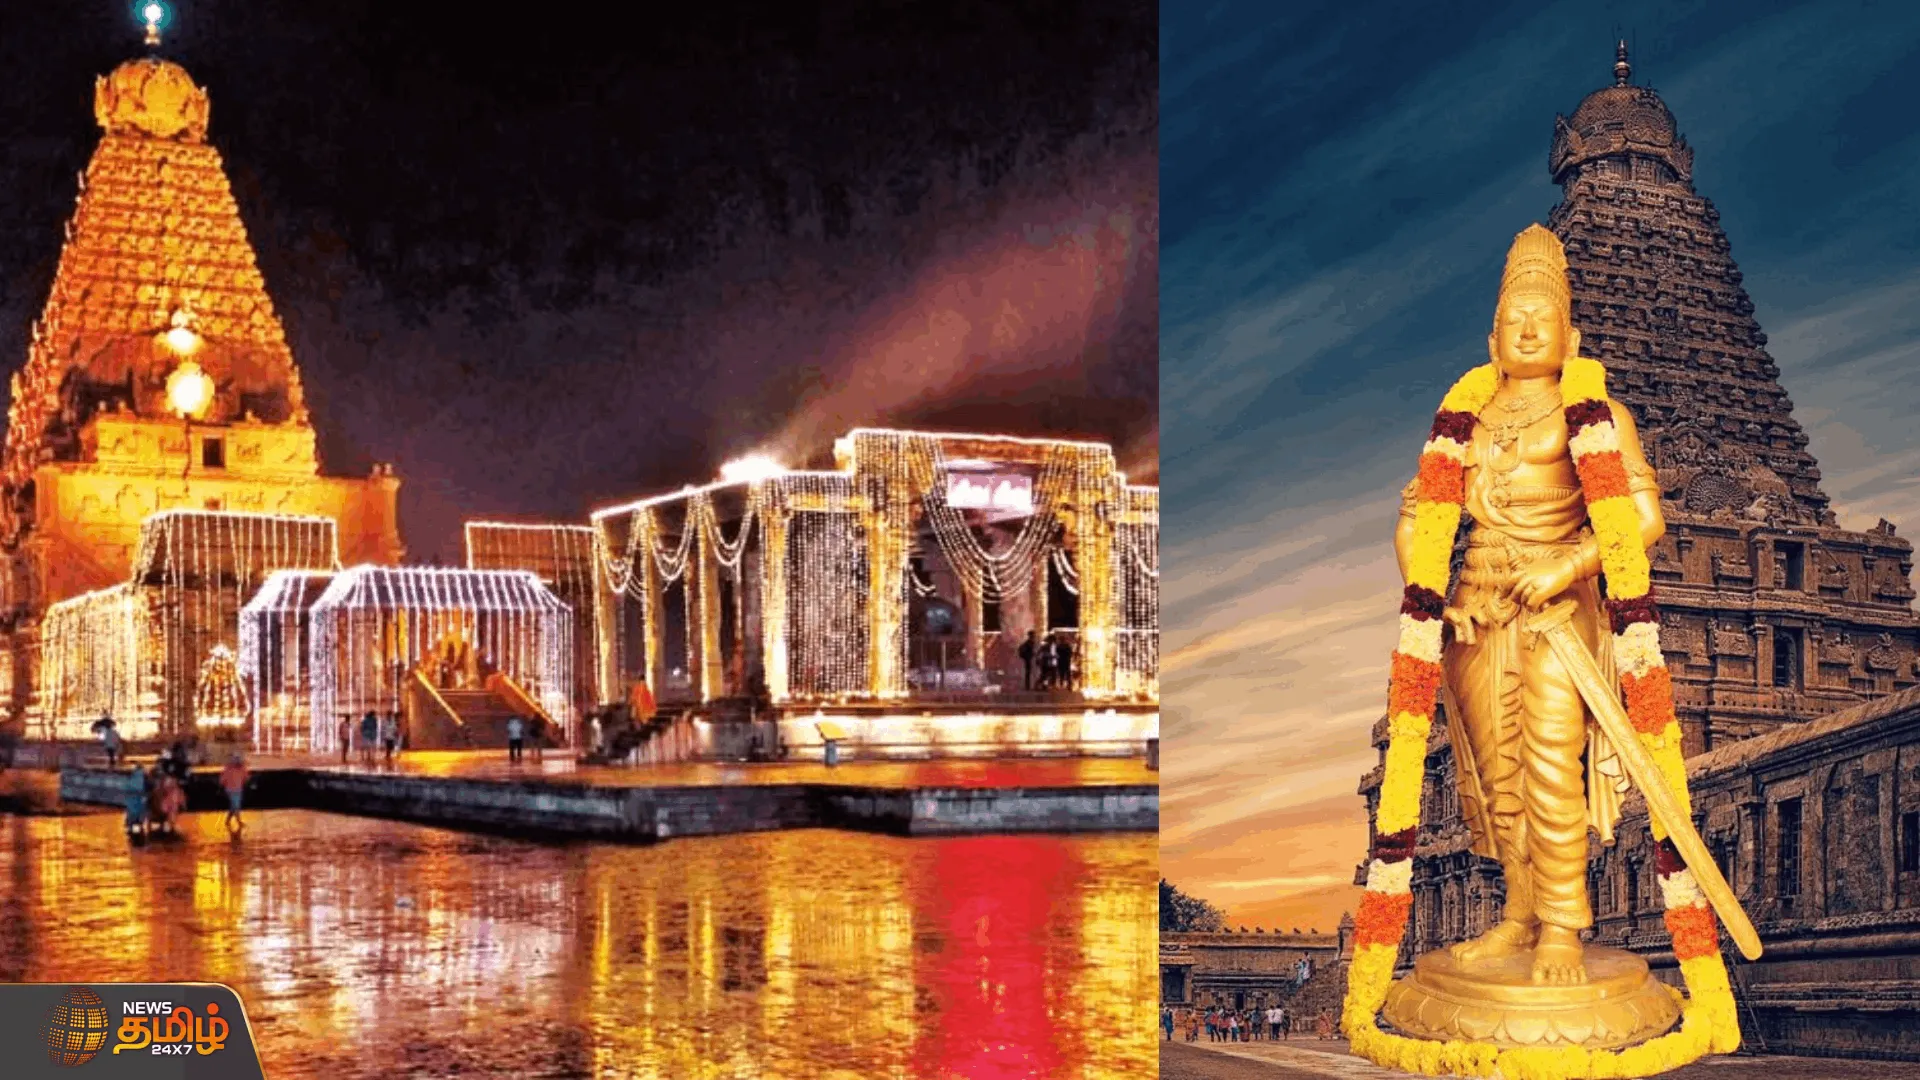 ராஜராஜ சோழனின் 1,038 ஆம் ஆண்டு சதய விழா  மாநகராட்சி சார்பில் பரதநாட்டியம், தப்பாட்டம்